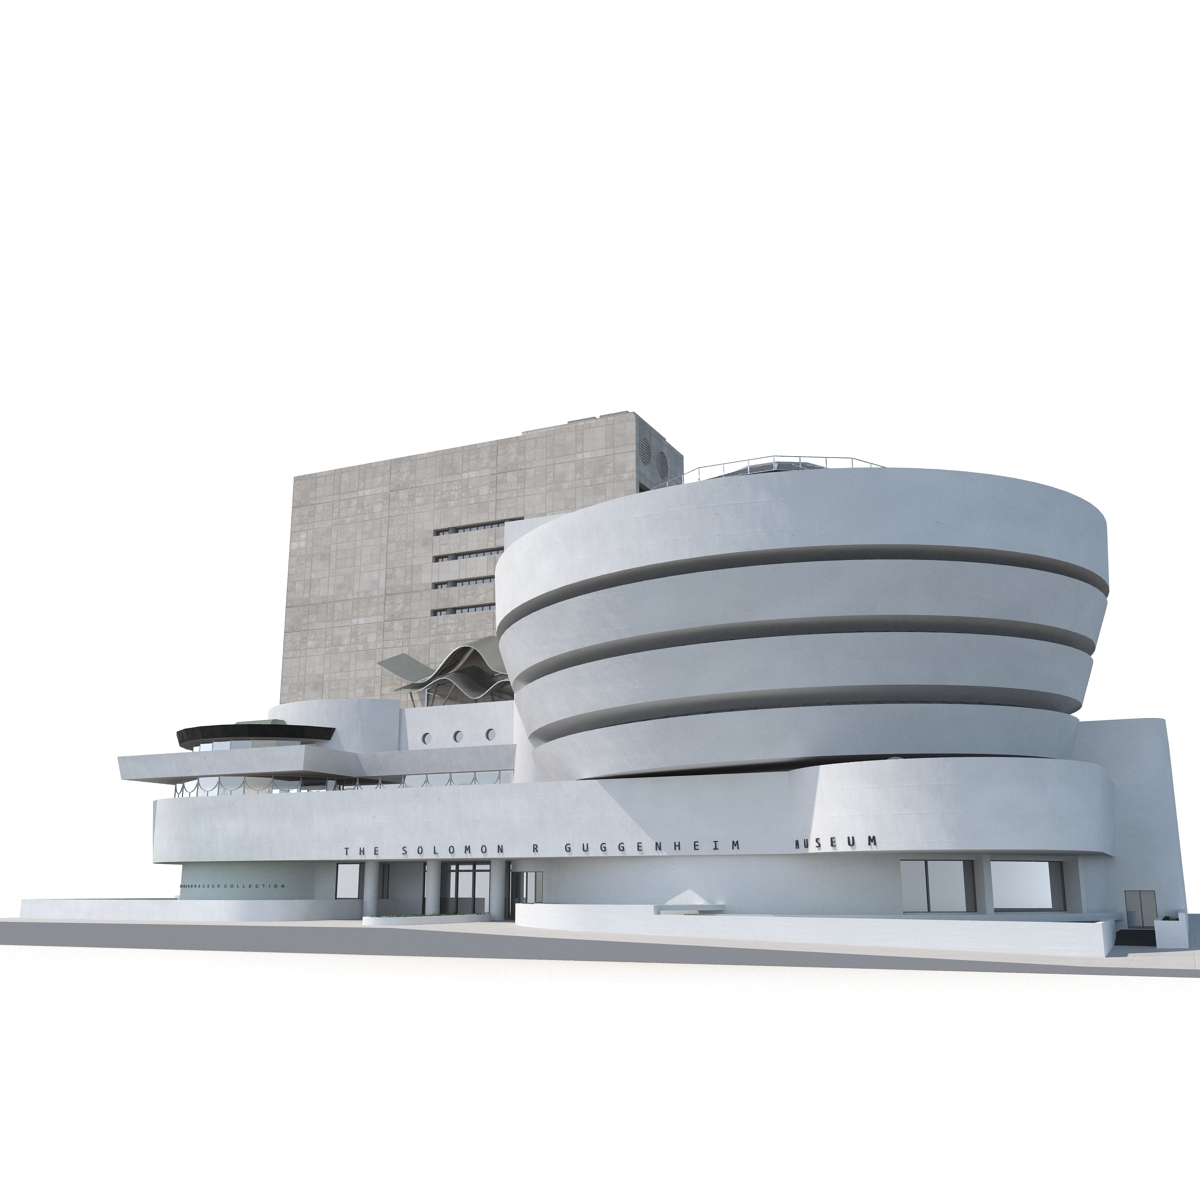 所罗门r古根海姆博物馆3d模型